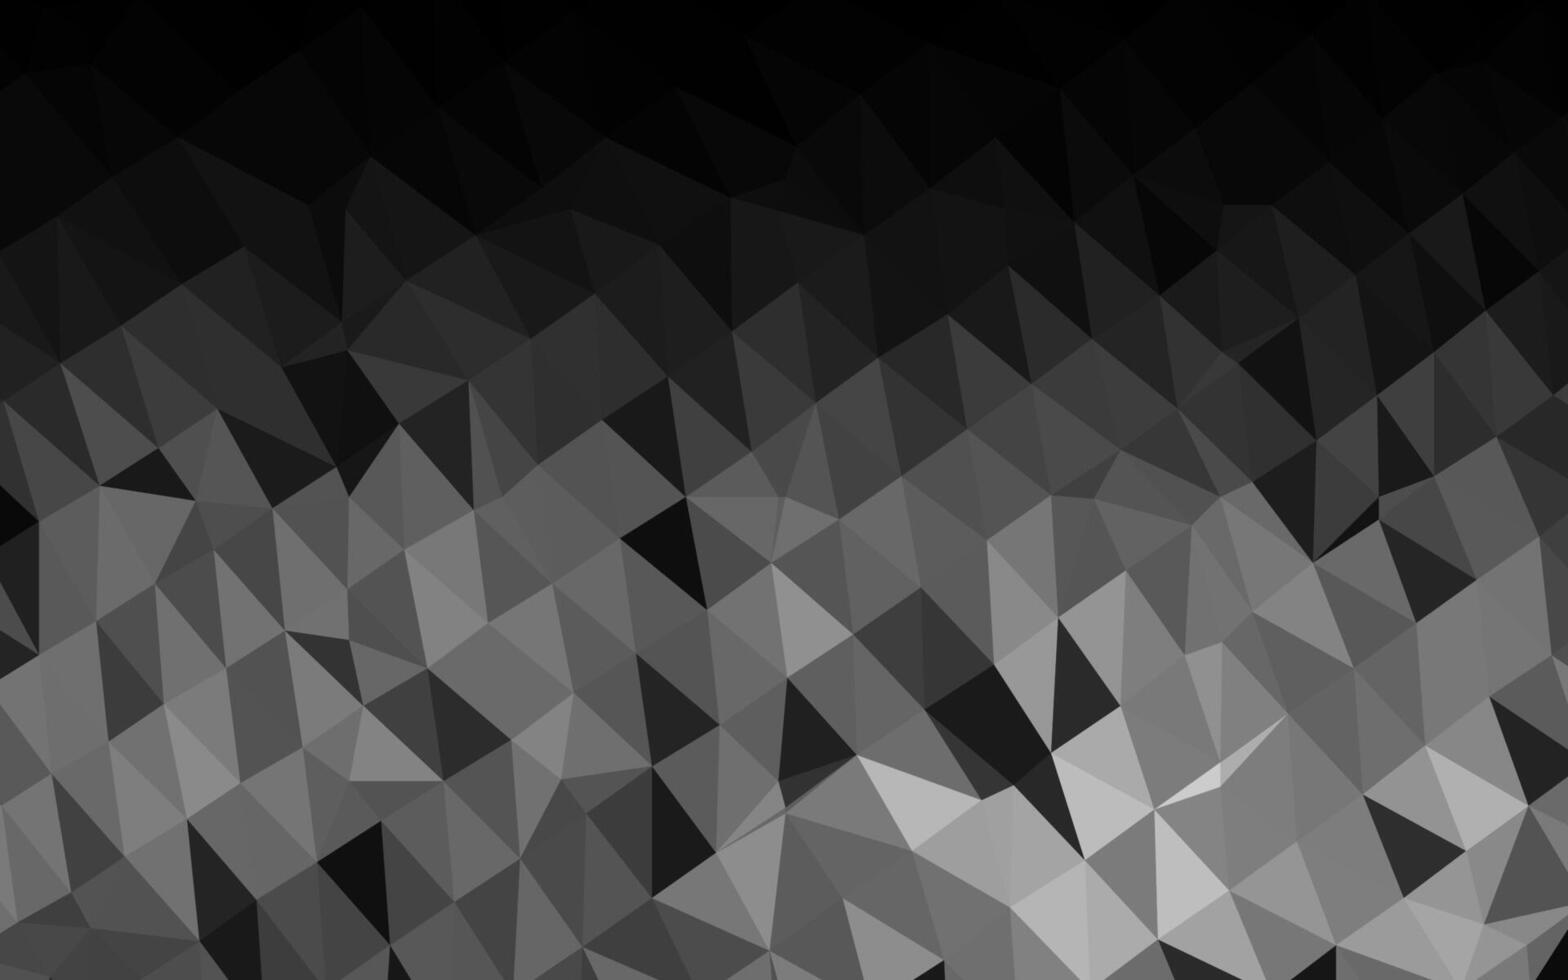 luz prata, cinzento triângulo mosaico modelo. vetor